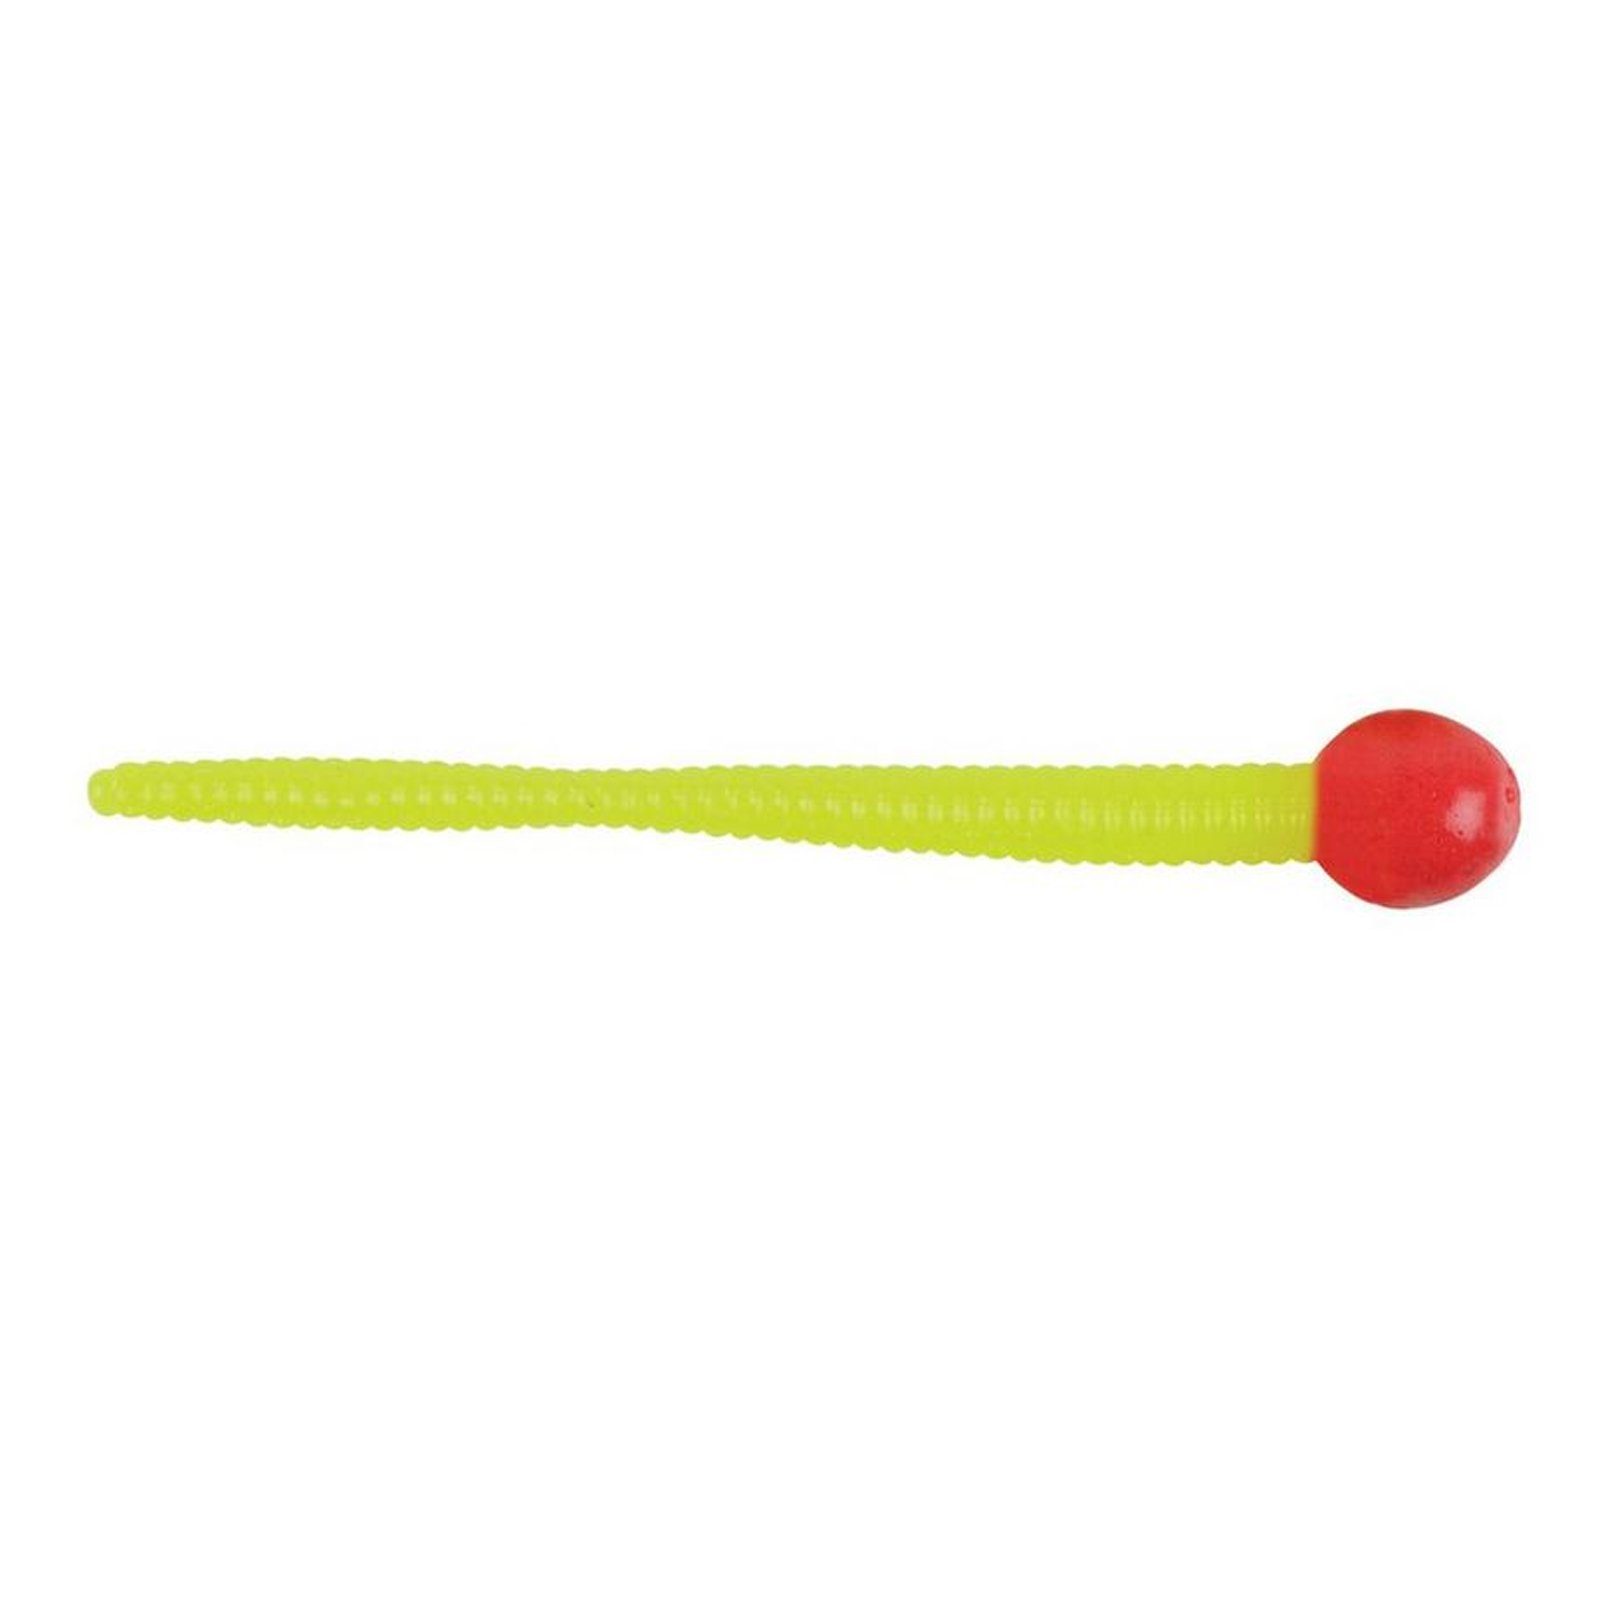 Berkley Kunstköder, Berkley Power Bait Mice Tail 8cm Fluo Red/Chartr Gummiköder Fluo Red/Chartreuse | Kunstköder